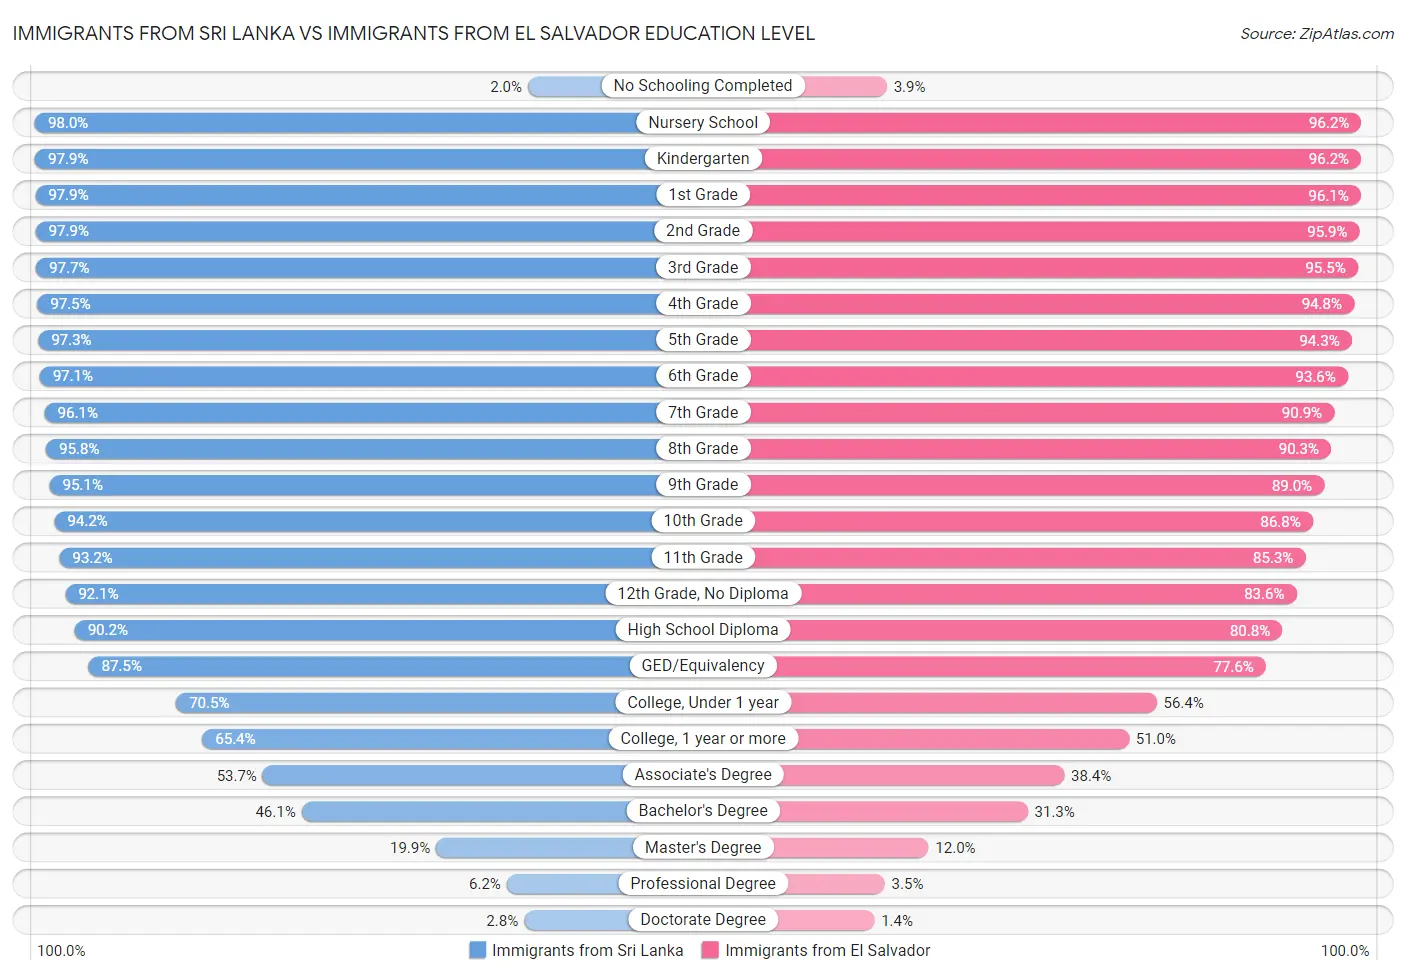 Immigrants from Sri Lanka vs Immigrants from El Salvador Education Level